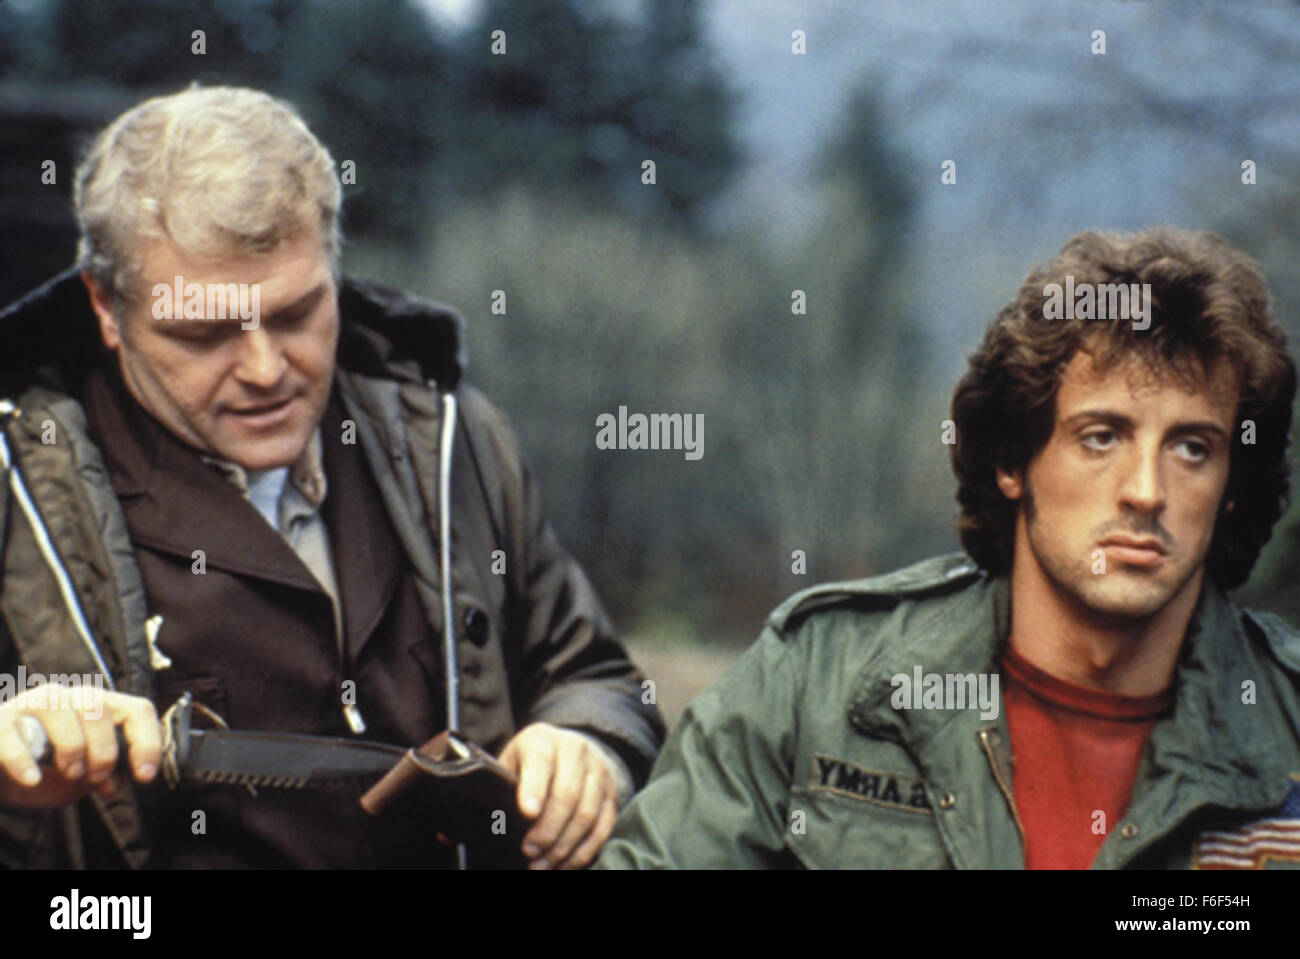 Nov 07, 1982; Hollywood, CA, Stati Uniti d'America; immagine dal direttore Ted Kotcheff il dramma di azione "Rambo: primo sangue' starring BRIAN DENNEHY come speranza sceriffo Teasle sarà e Sylvester Stallone come John J. Rambo. Foto Stock